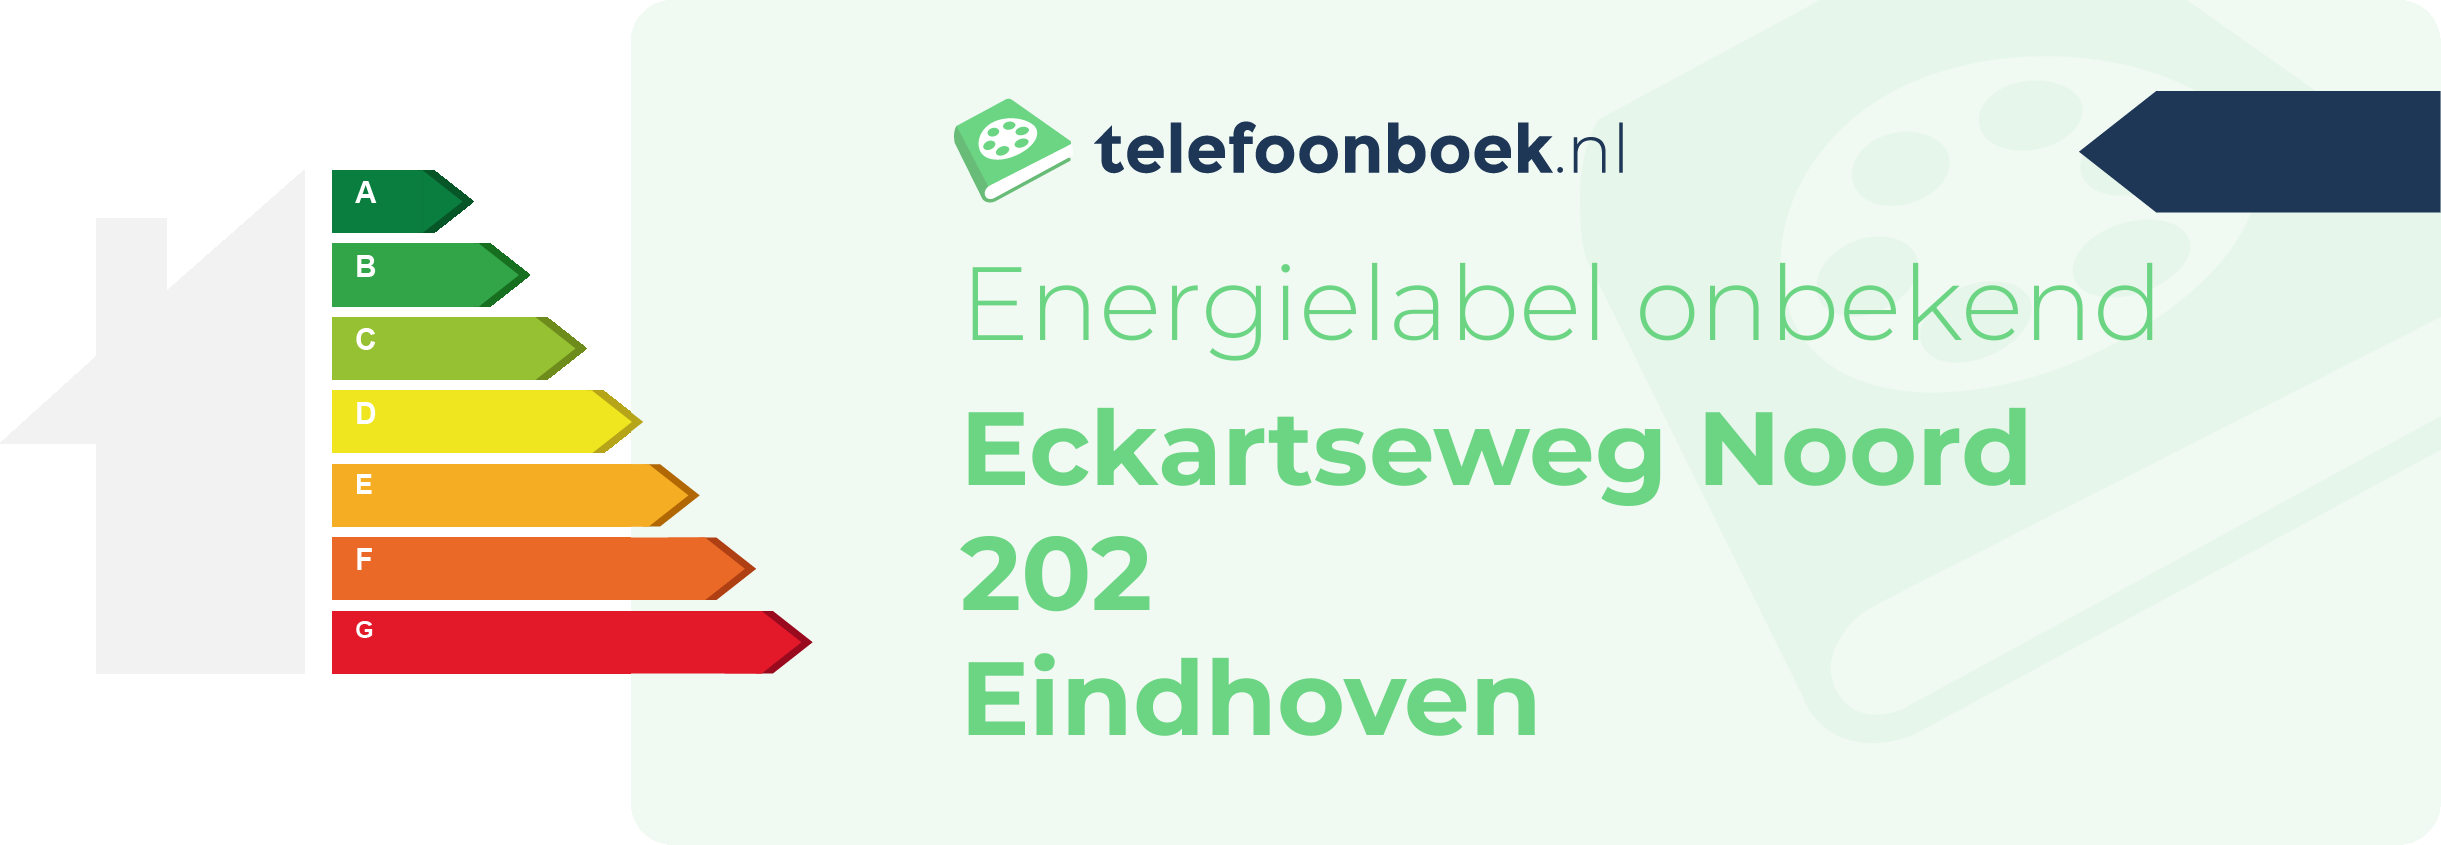 Energielabel Eckartseweg Noord 202 Eindhoven